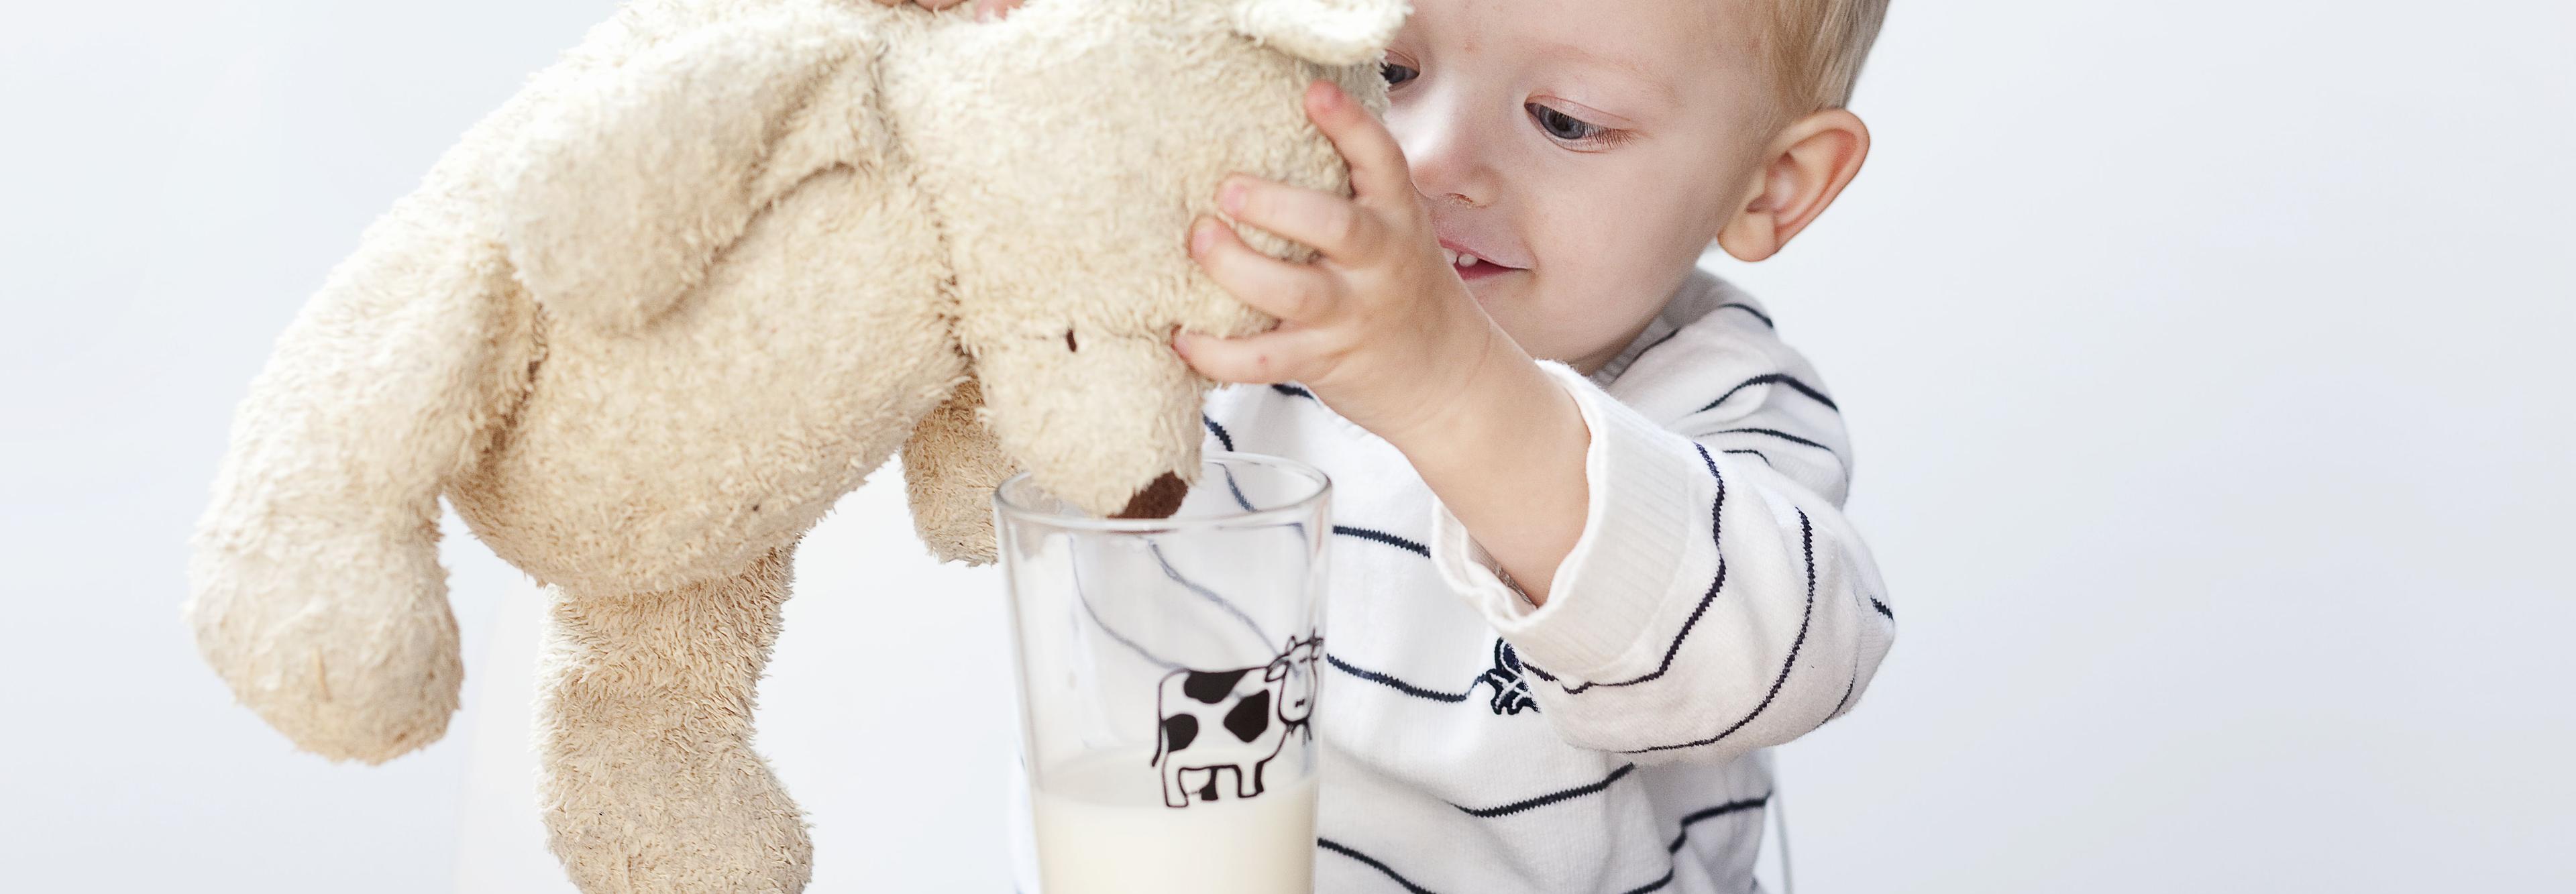 Liten gutt som gir en lysebrun bamse melk fra et glass.